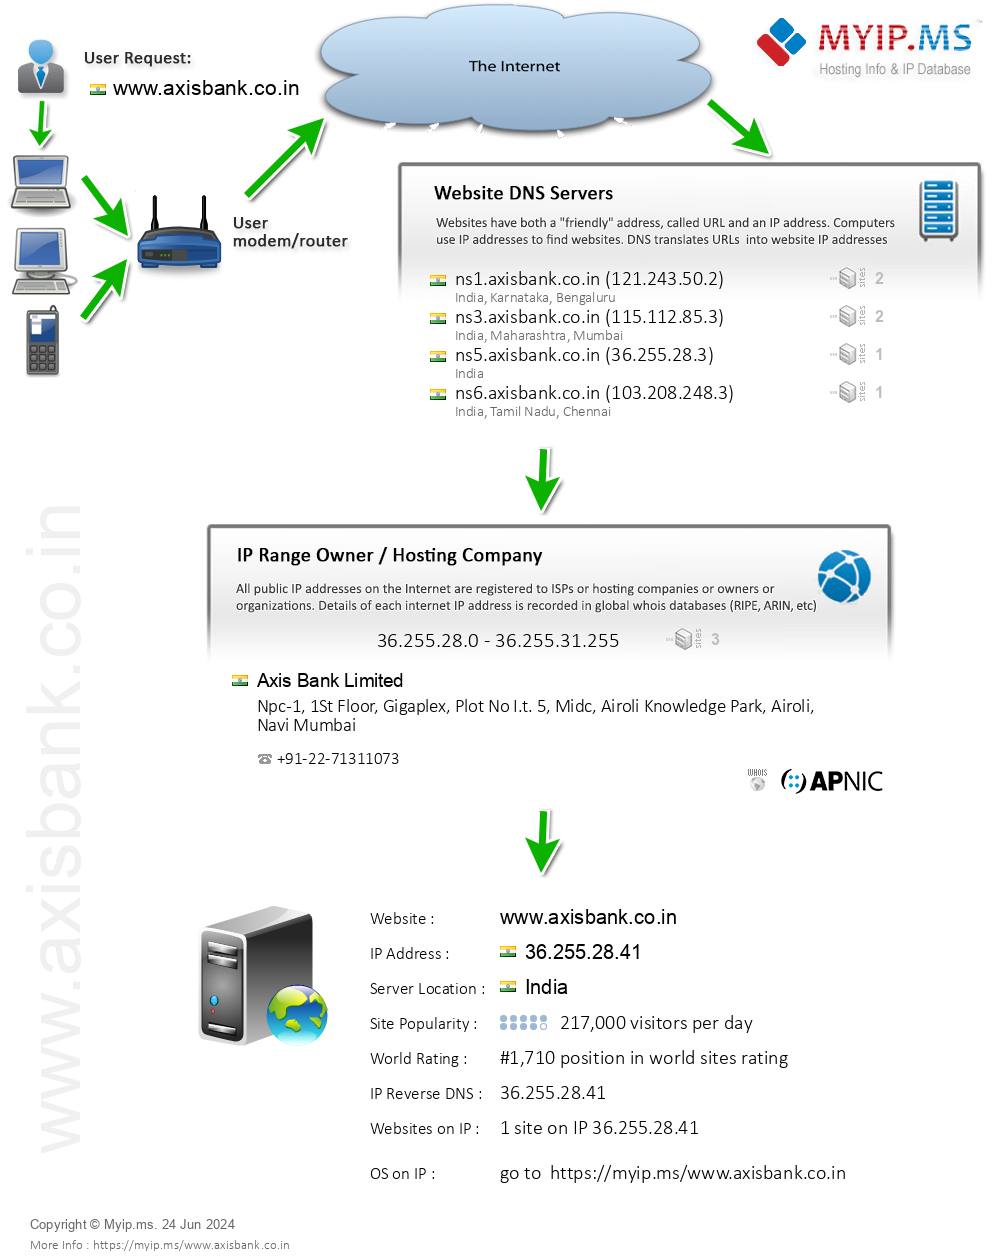 Axisbank.co.in - Website Hosting Visual IP Diagram